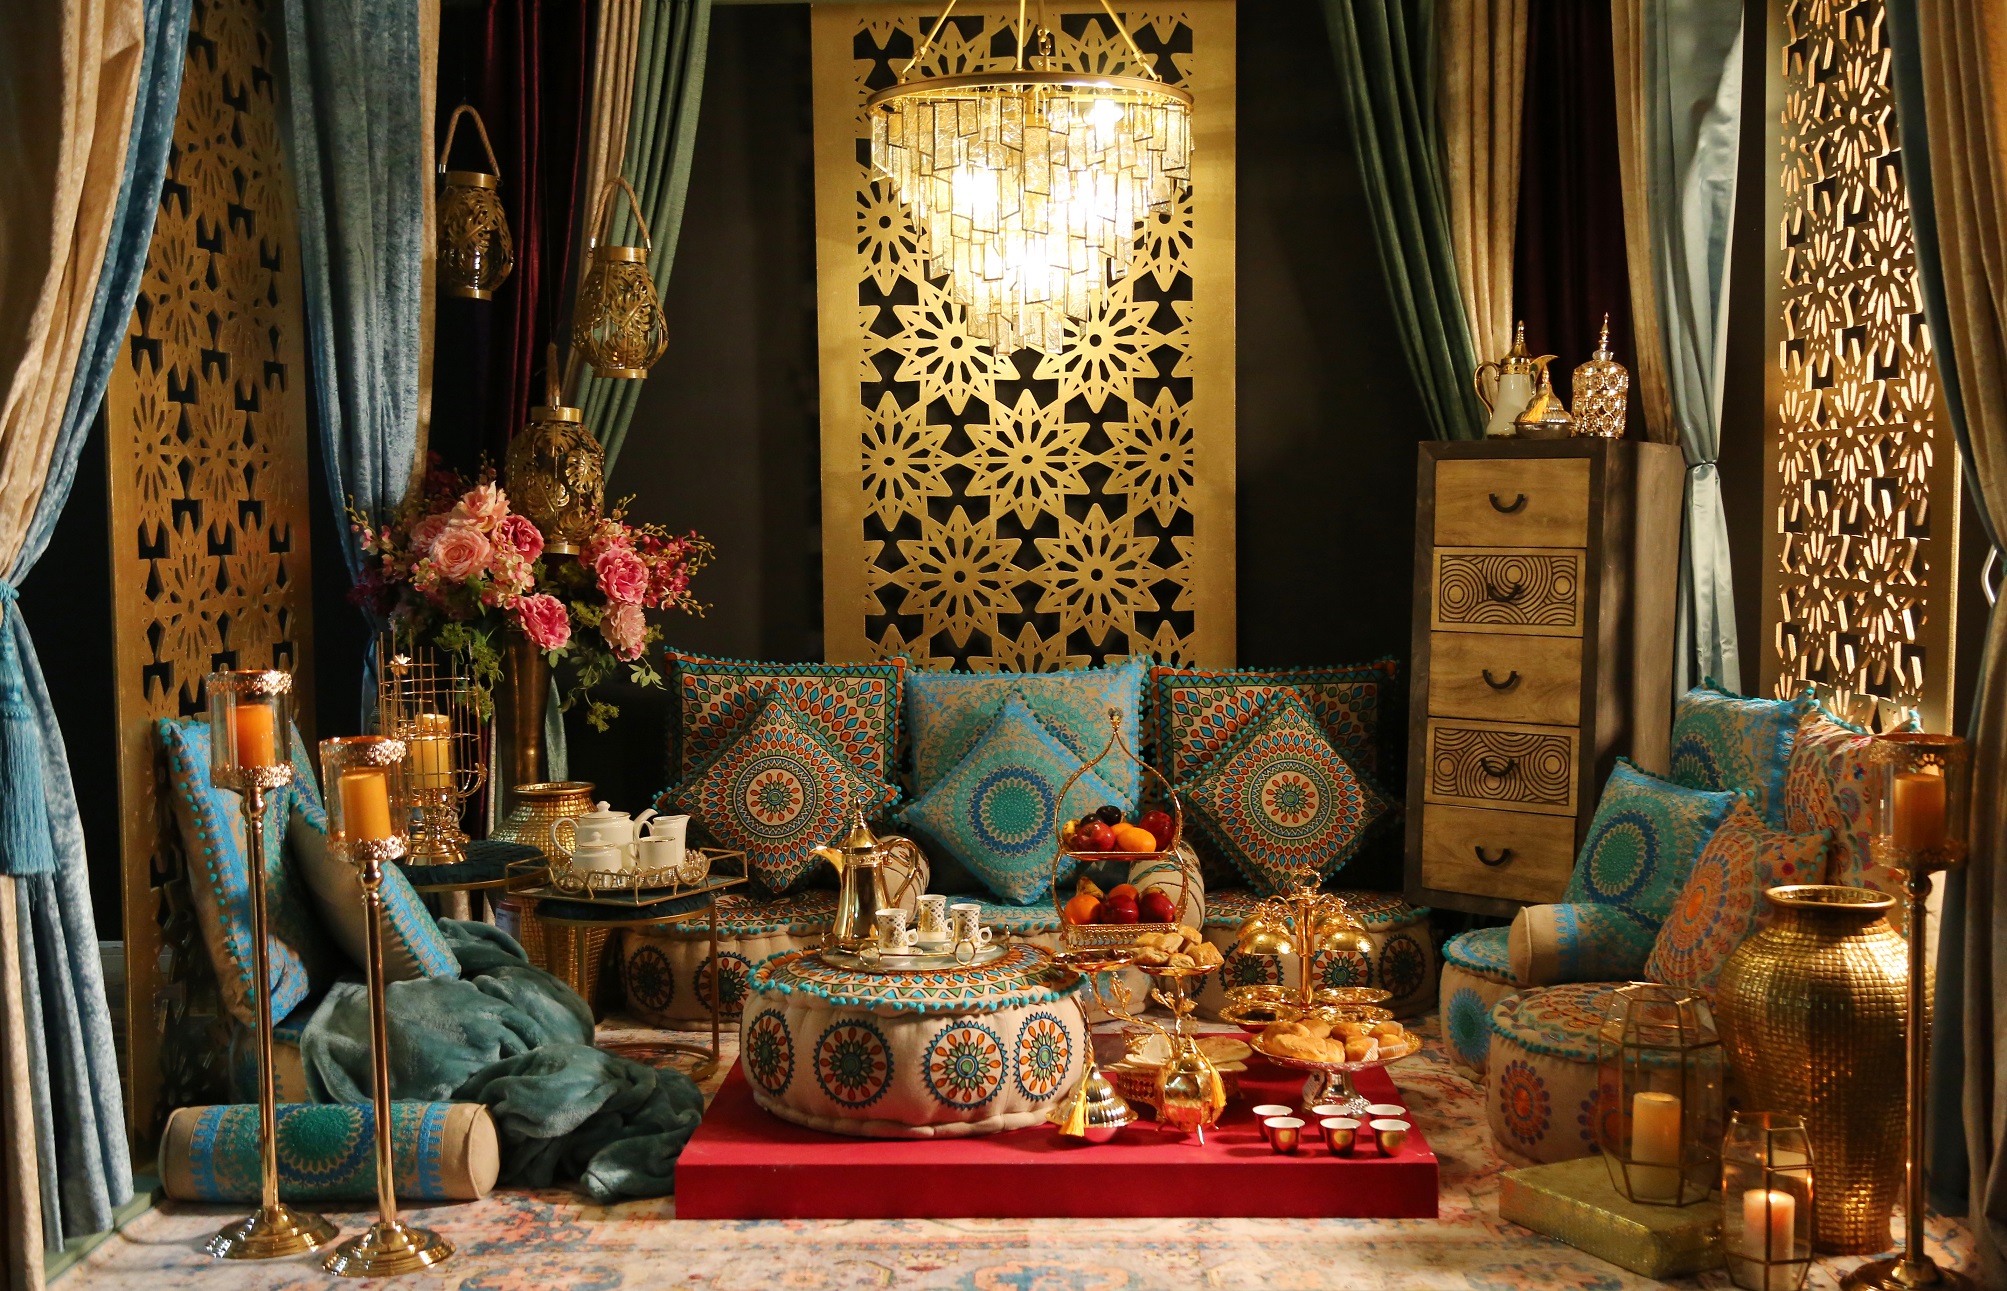 حول الإمارات للمفروشات المنزلية تطلق تشكيلتها الجديدة الخاصة بشهر رمضان 2020